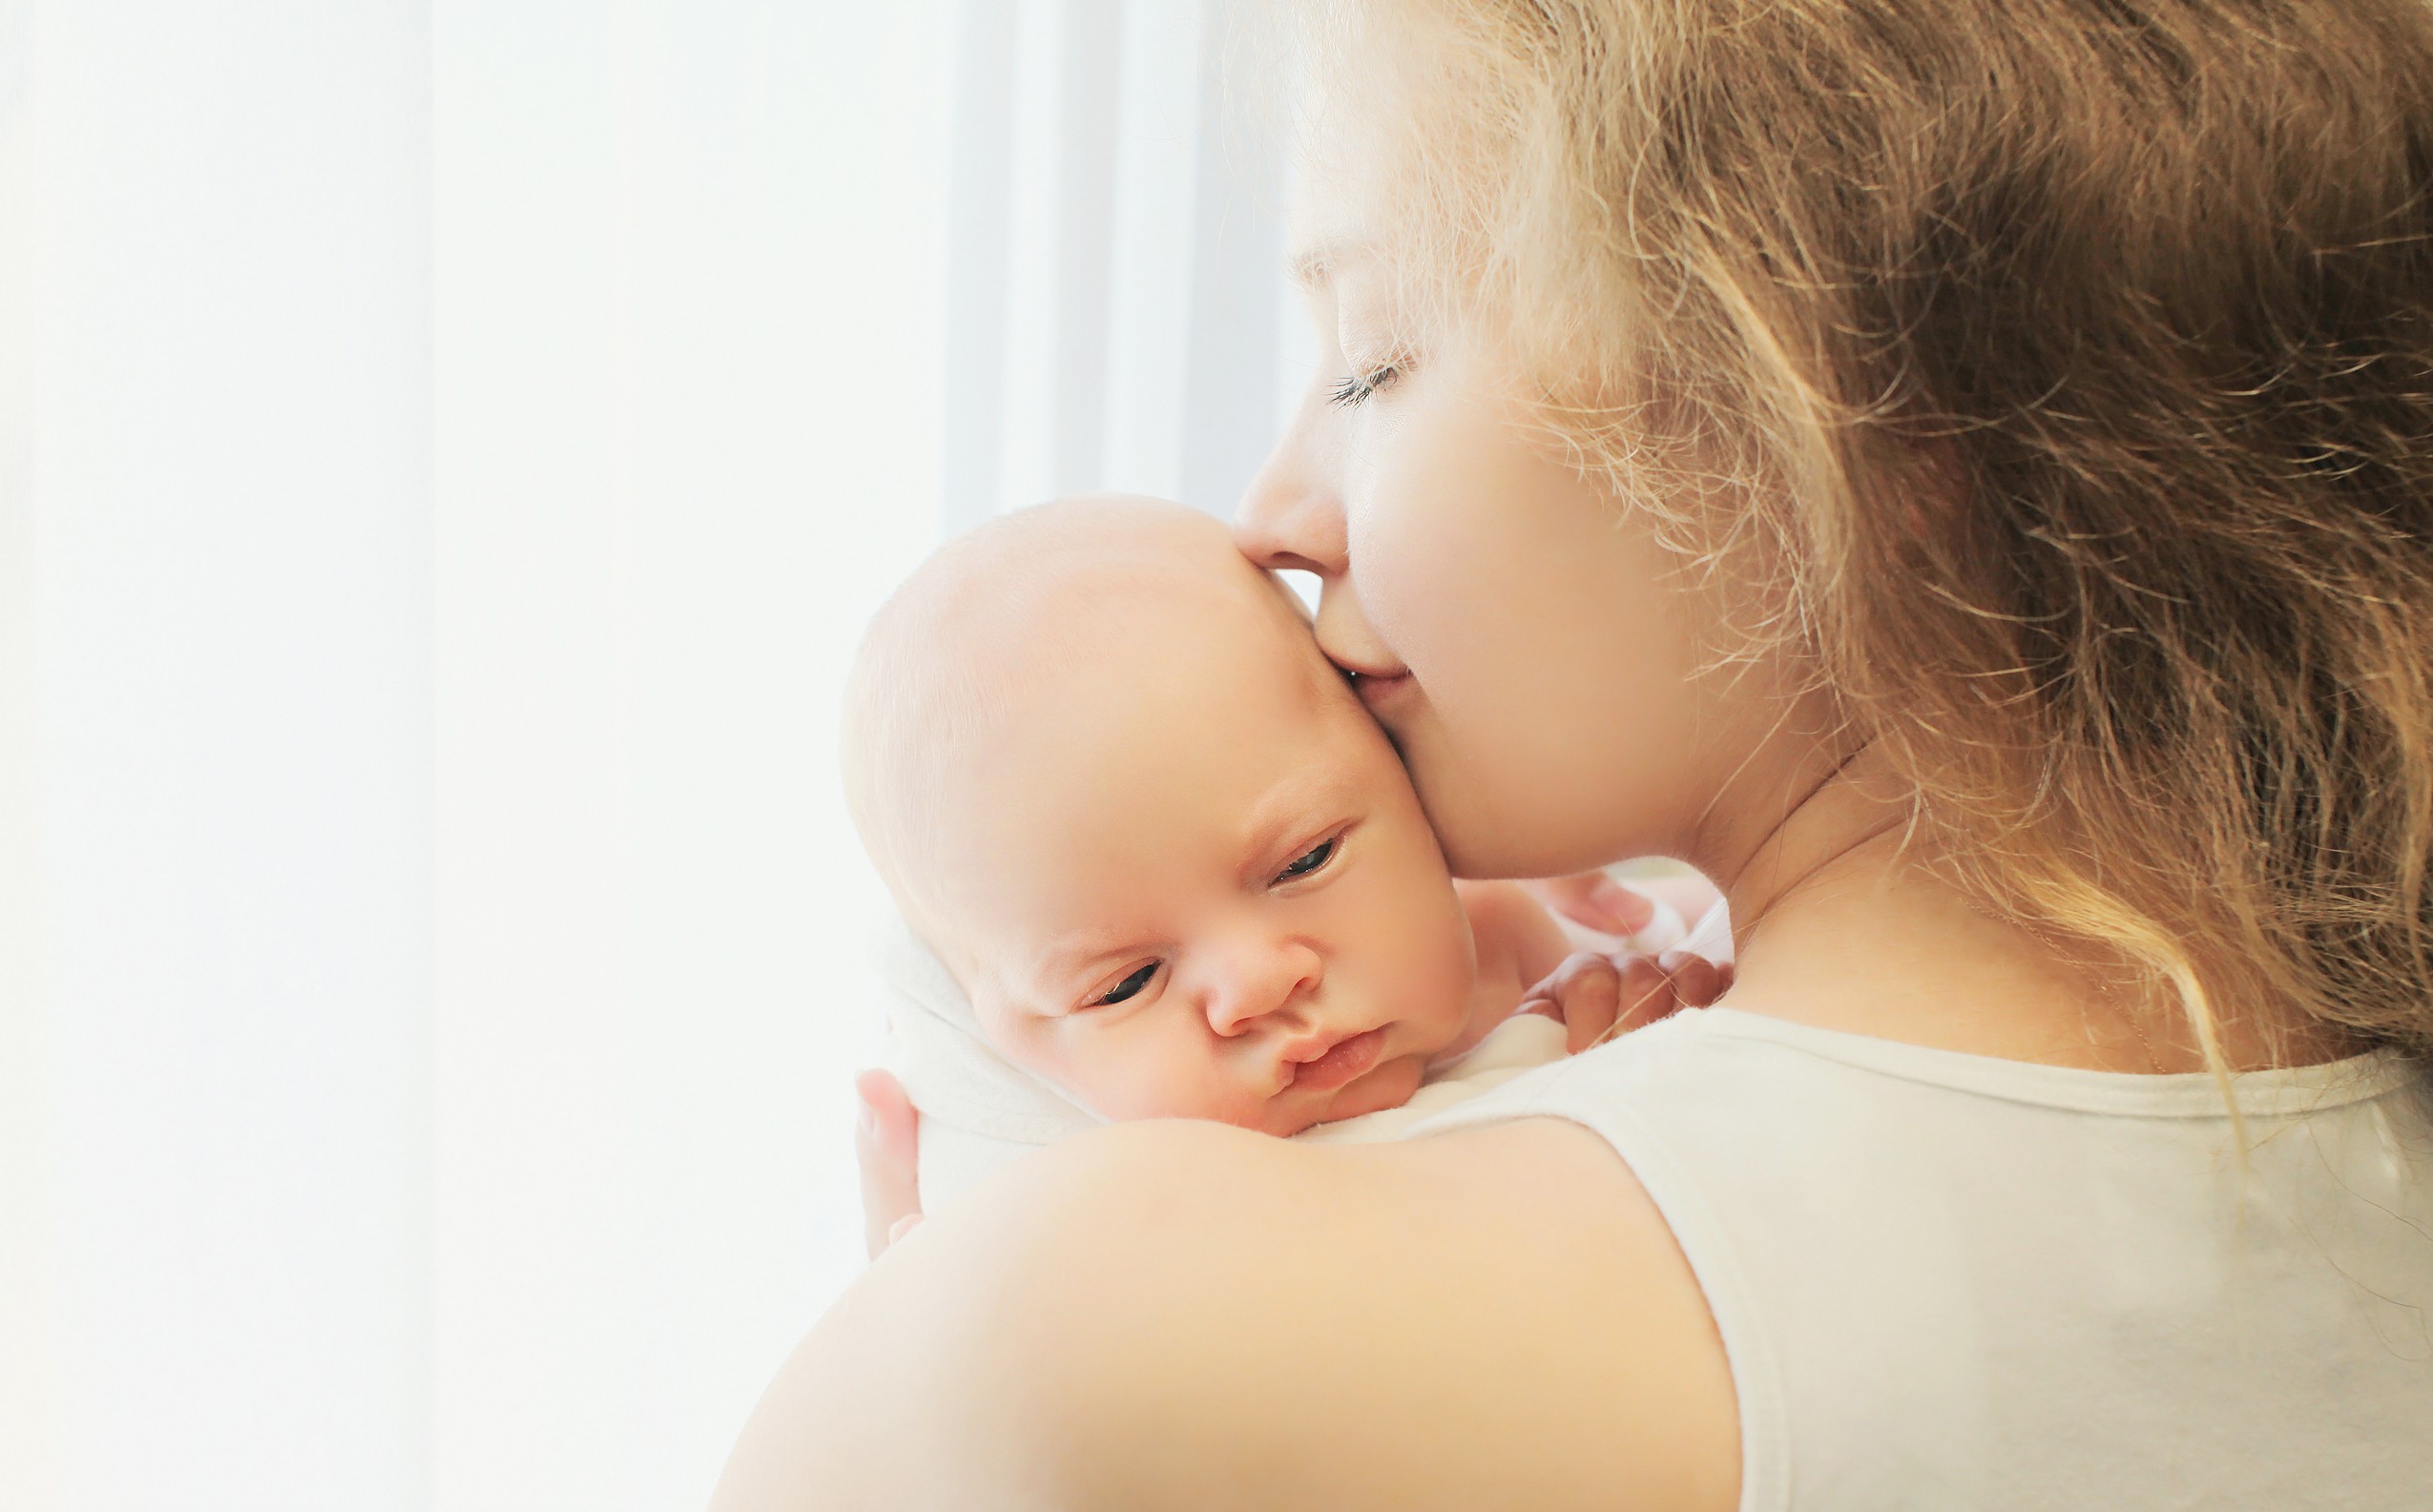 O cheiro do filho torna a mãe mais protetora, de acordo com estudo (Foto: Thinkstock)